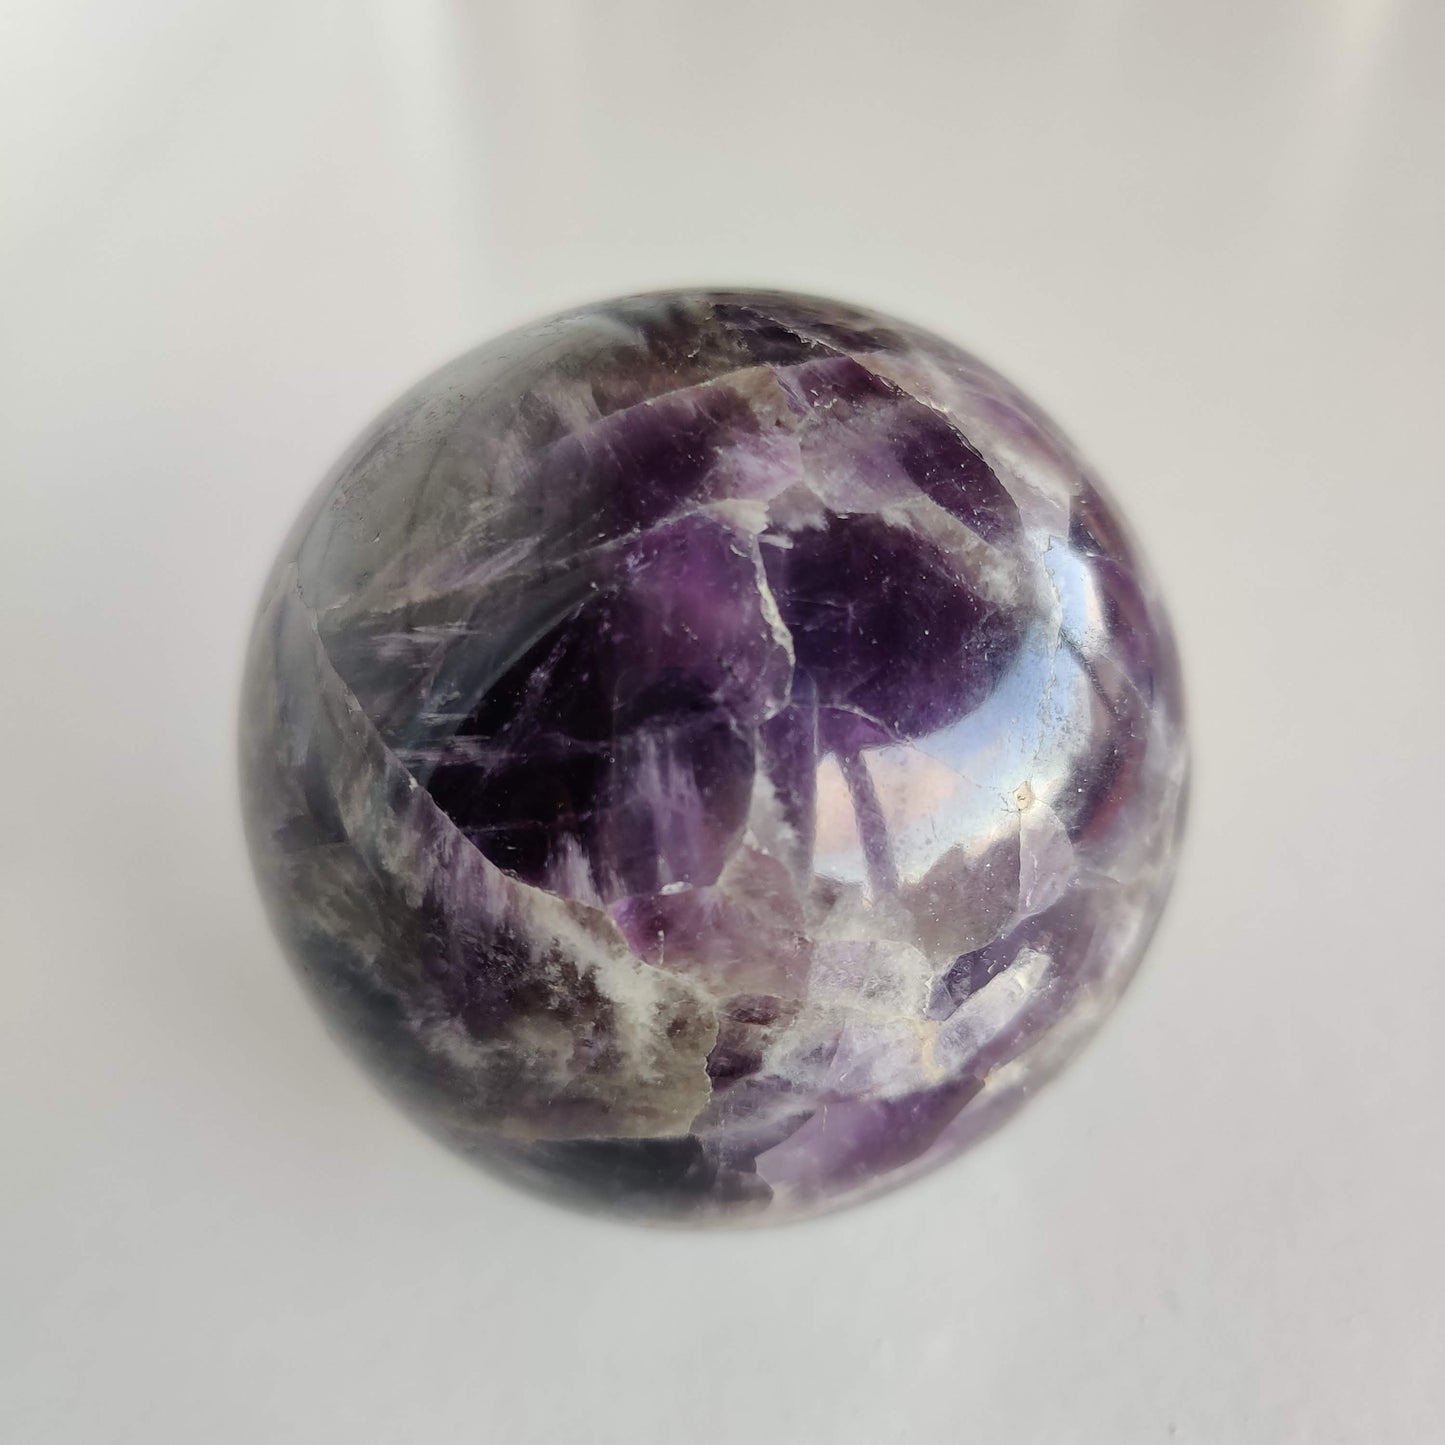 Polished Amethyst Crystal Sphere - Rivendell Shop